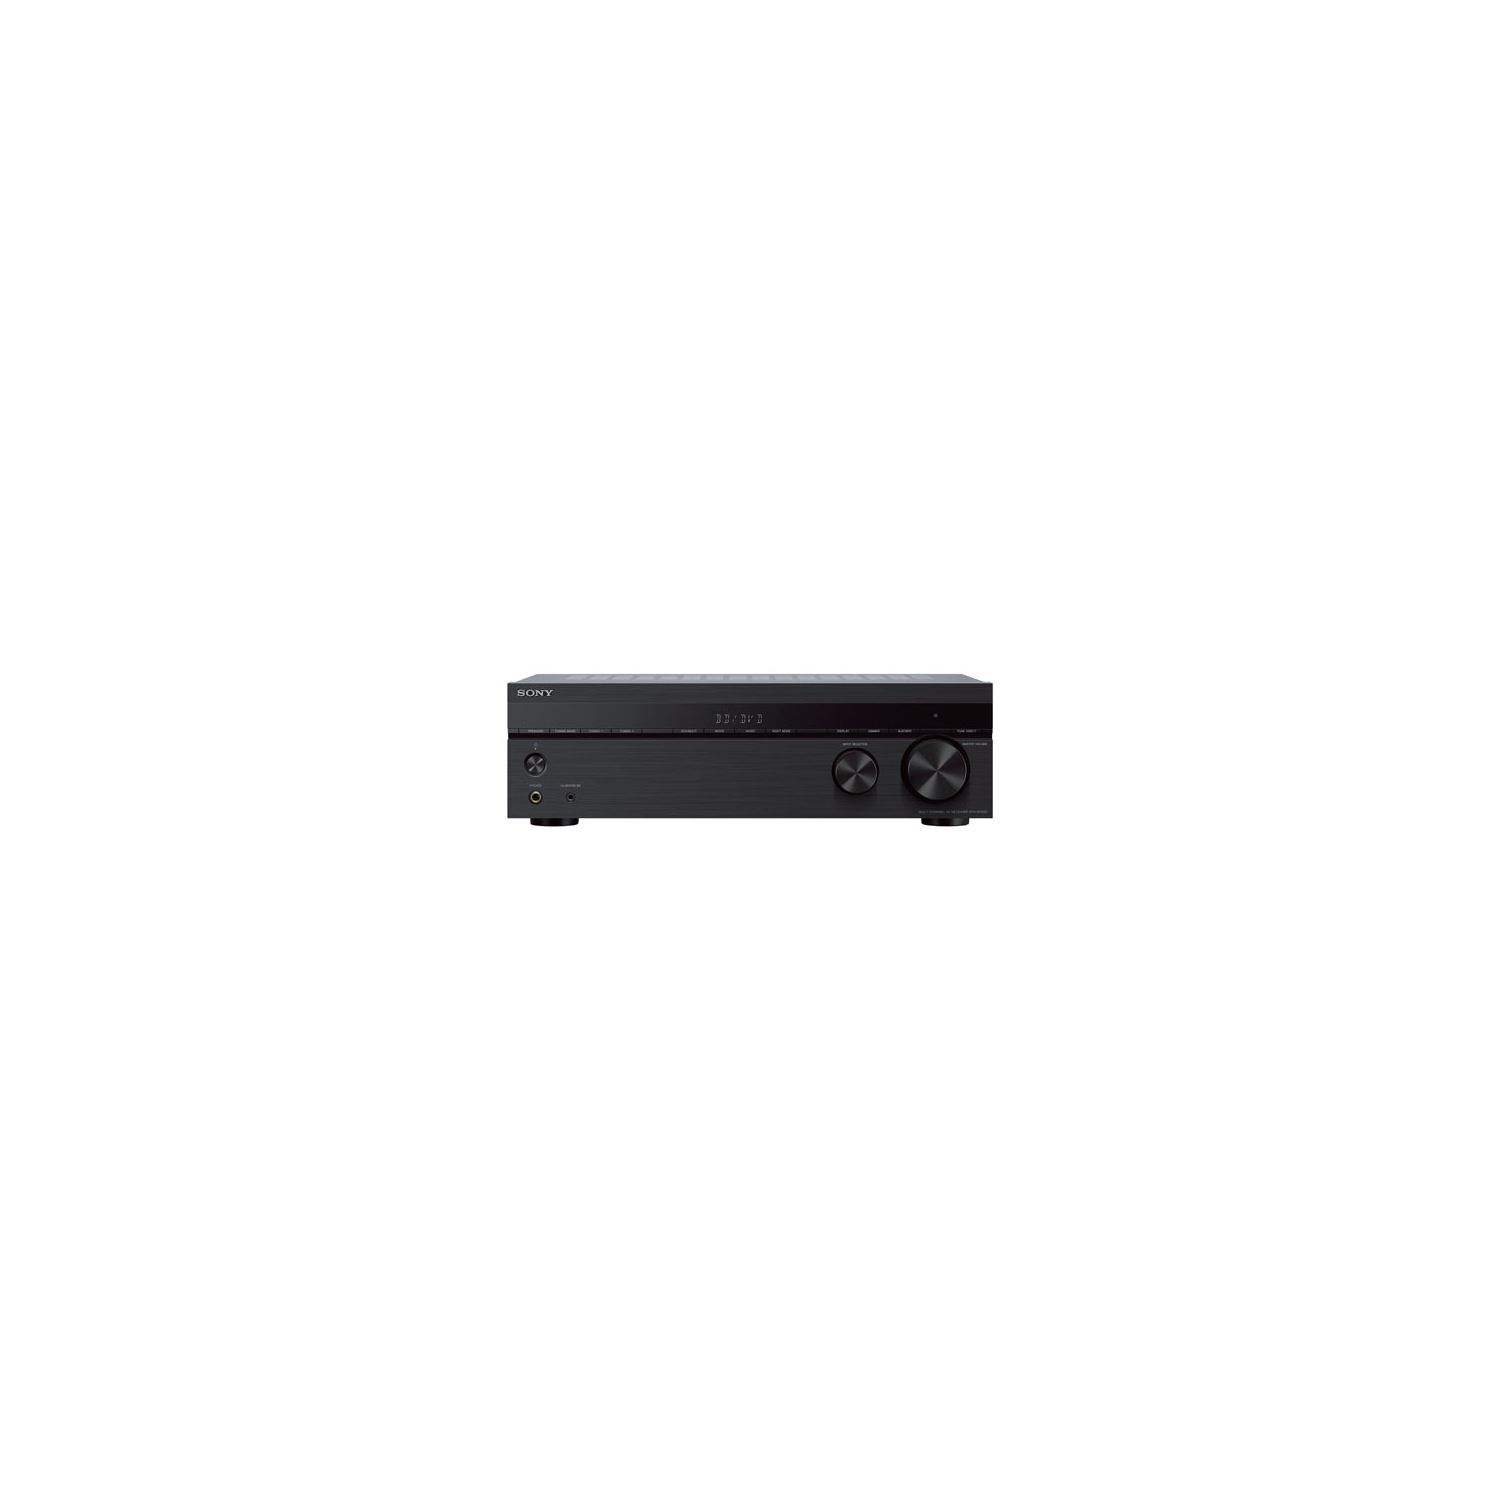 Sony STR-DH590 5.2 Channel 4K Ultra HD Home Theatre AV Receiver - Open Box